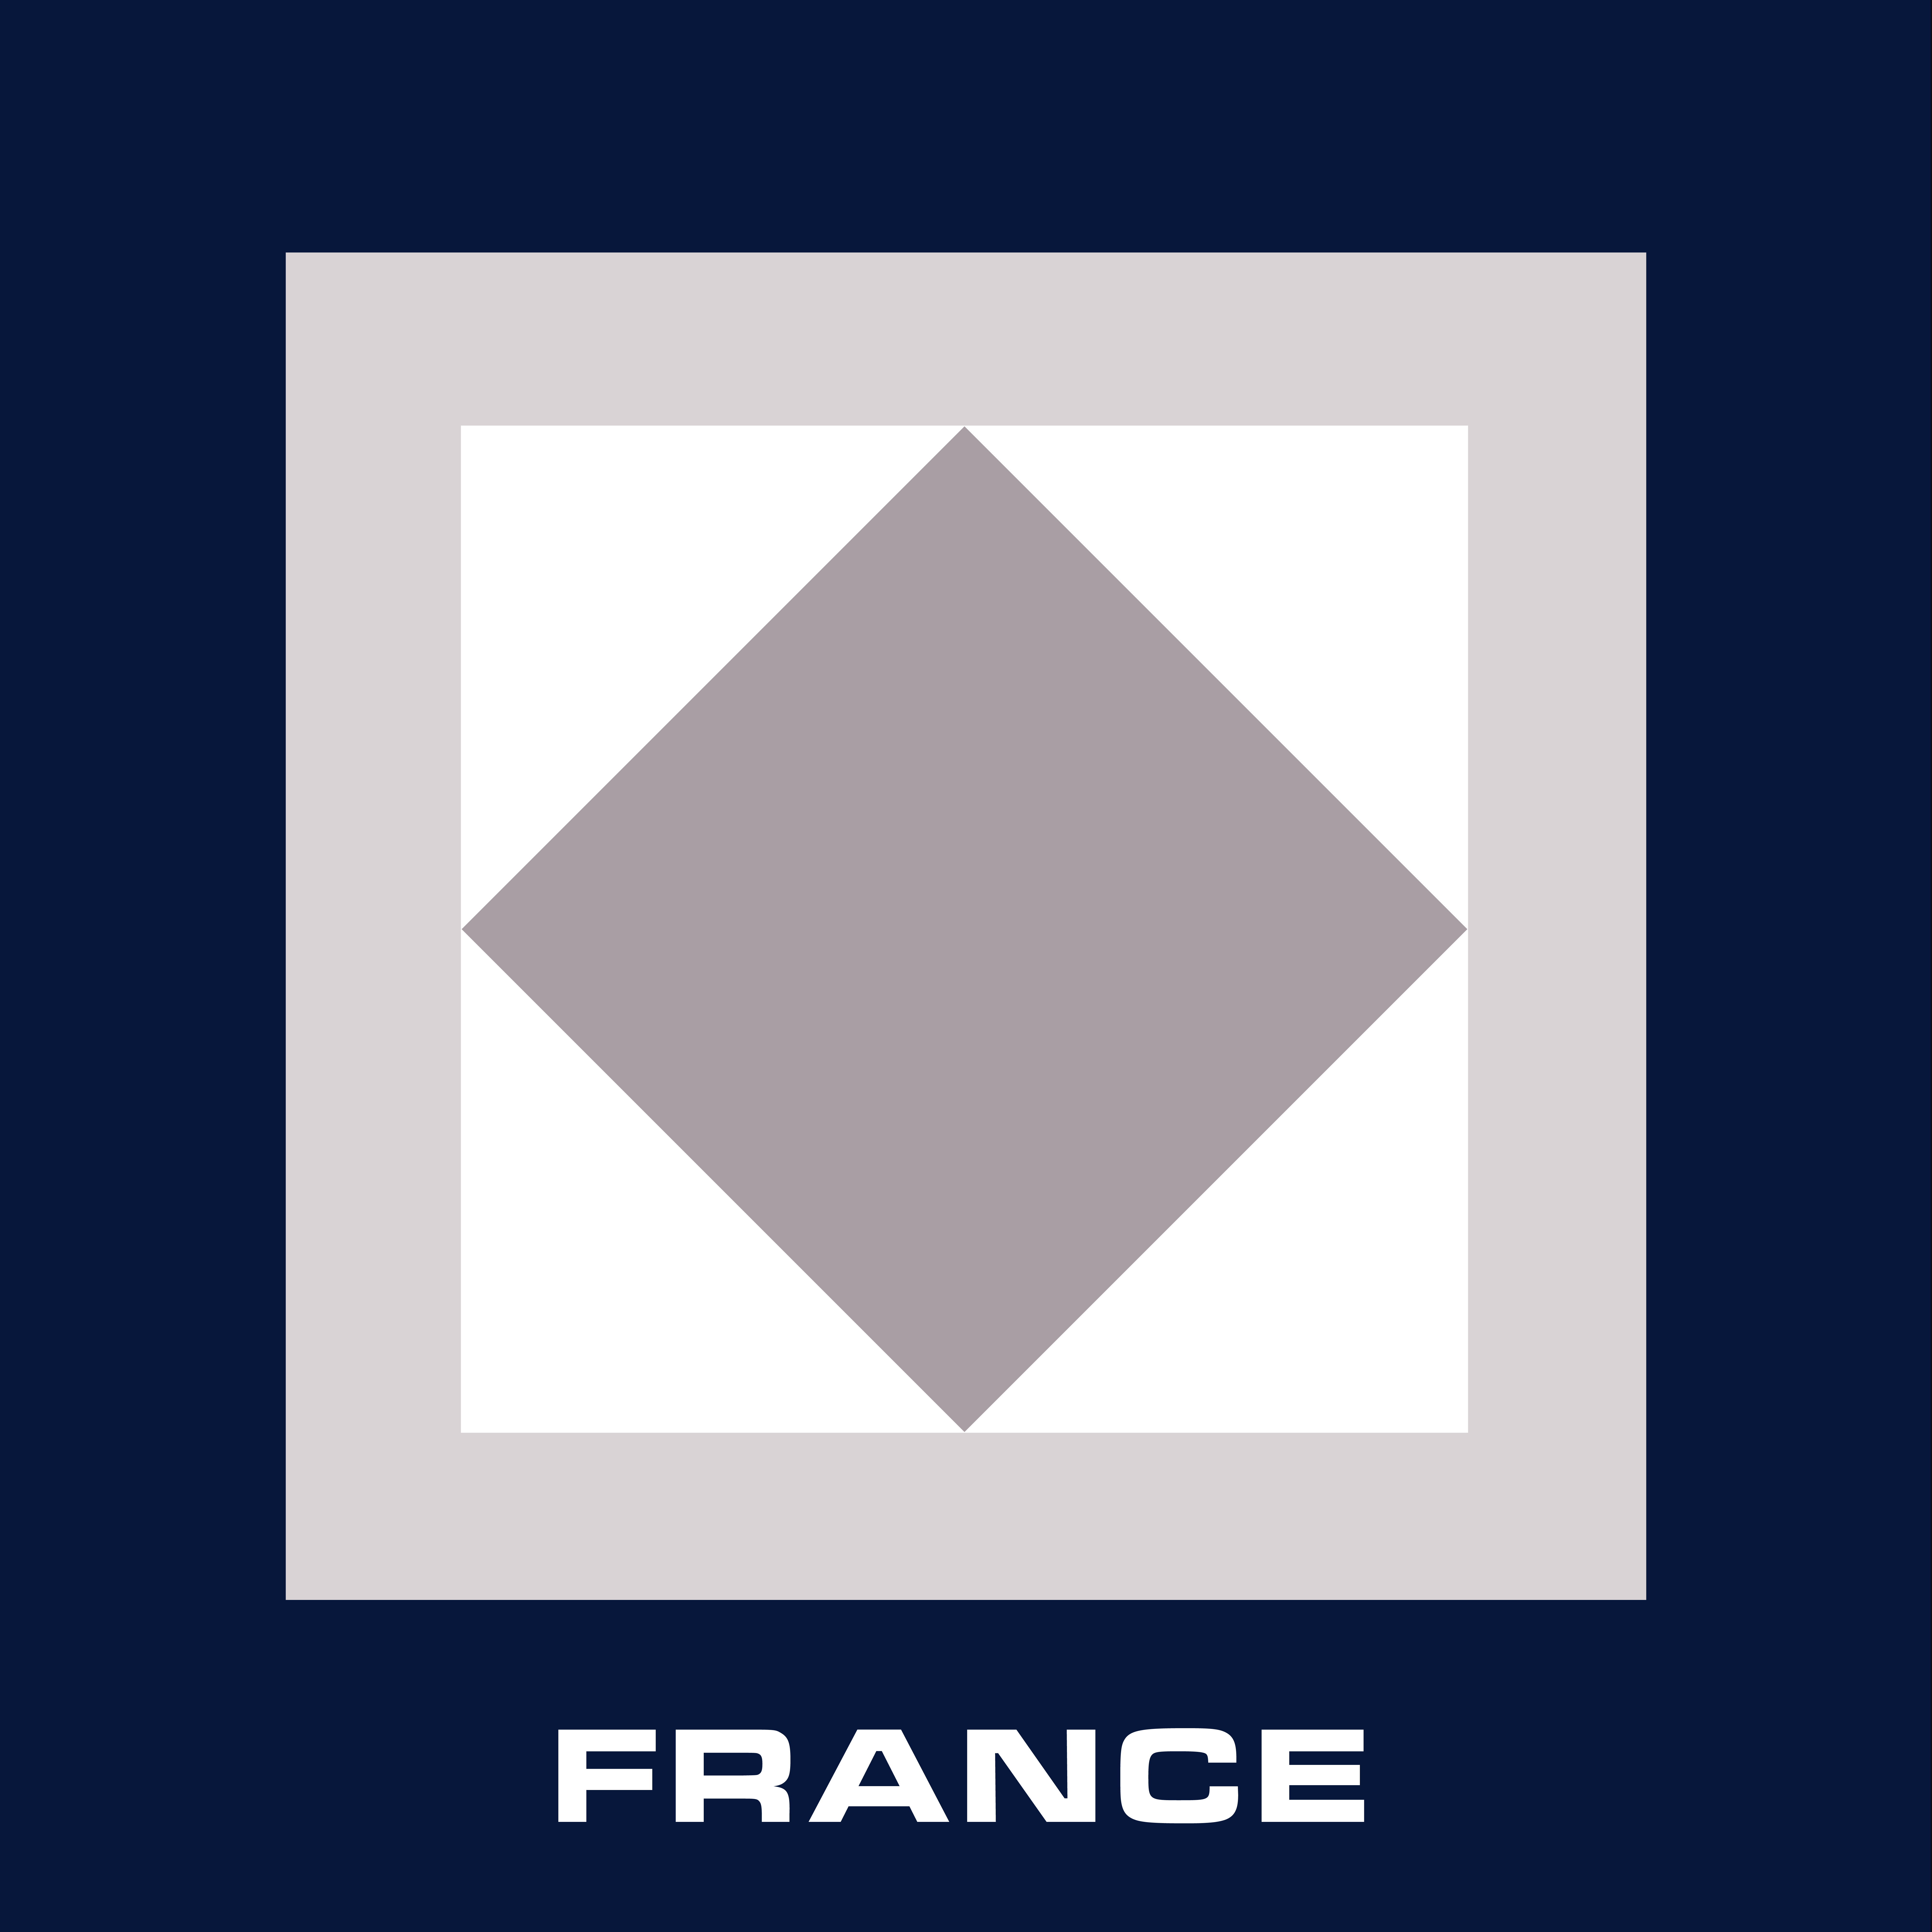 France House Flag